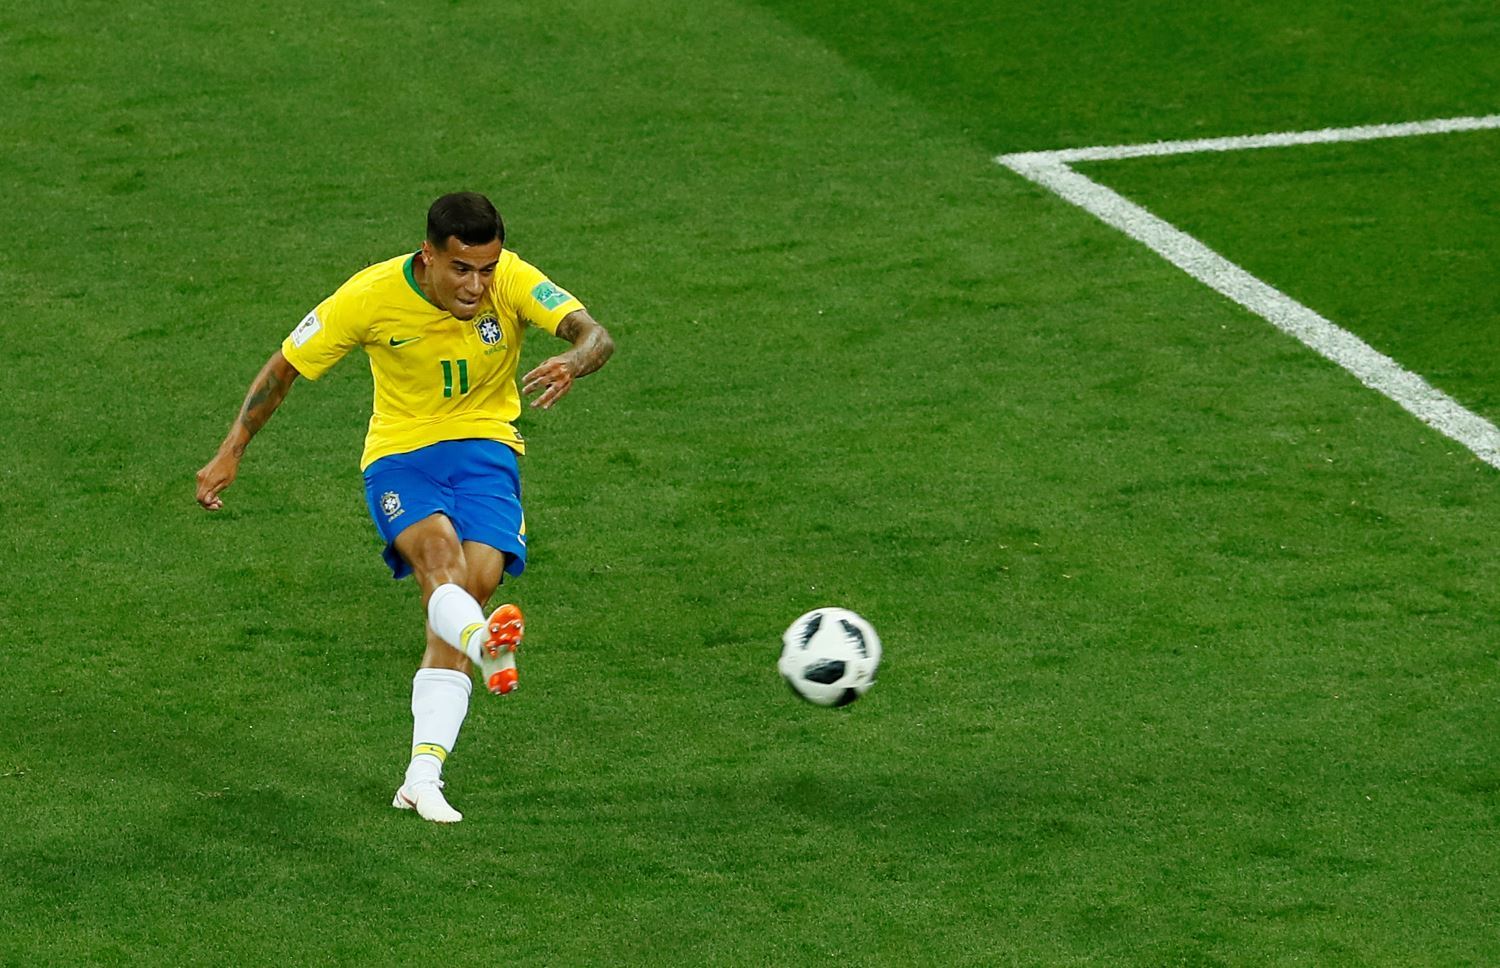 Brasil empata com a Suíça na estreia na Copa do Mundo 2018. Veja